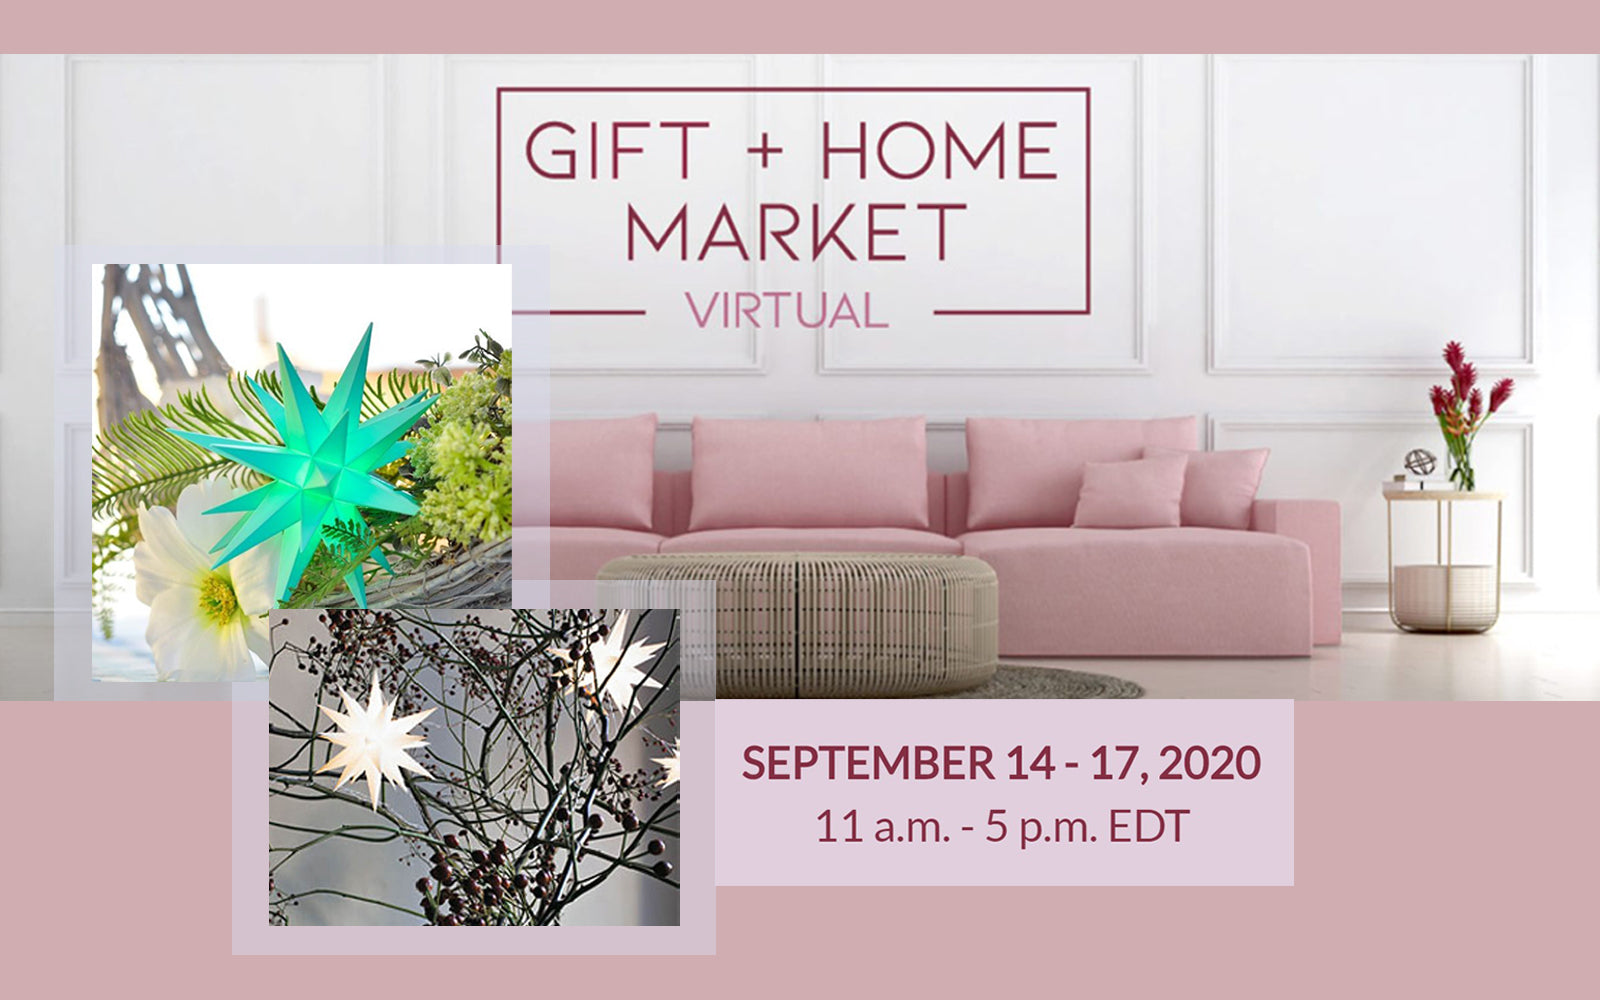 Virtual Gift + Home Market September 14 - 17, 2020